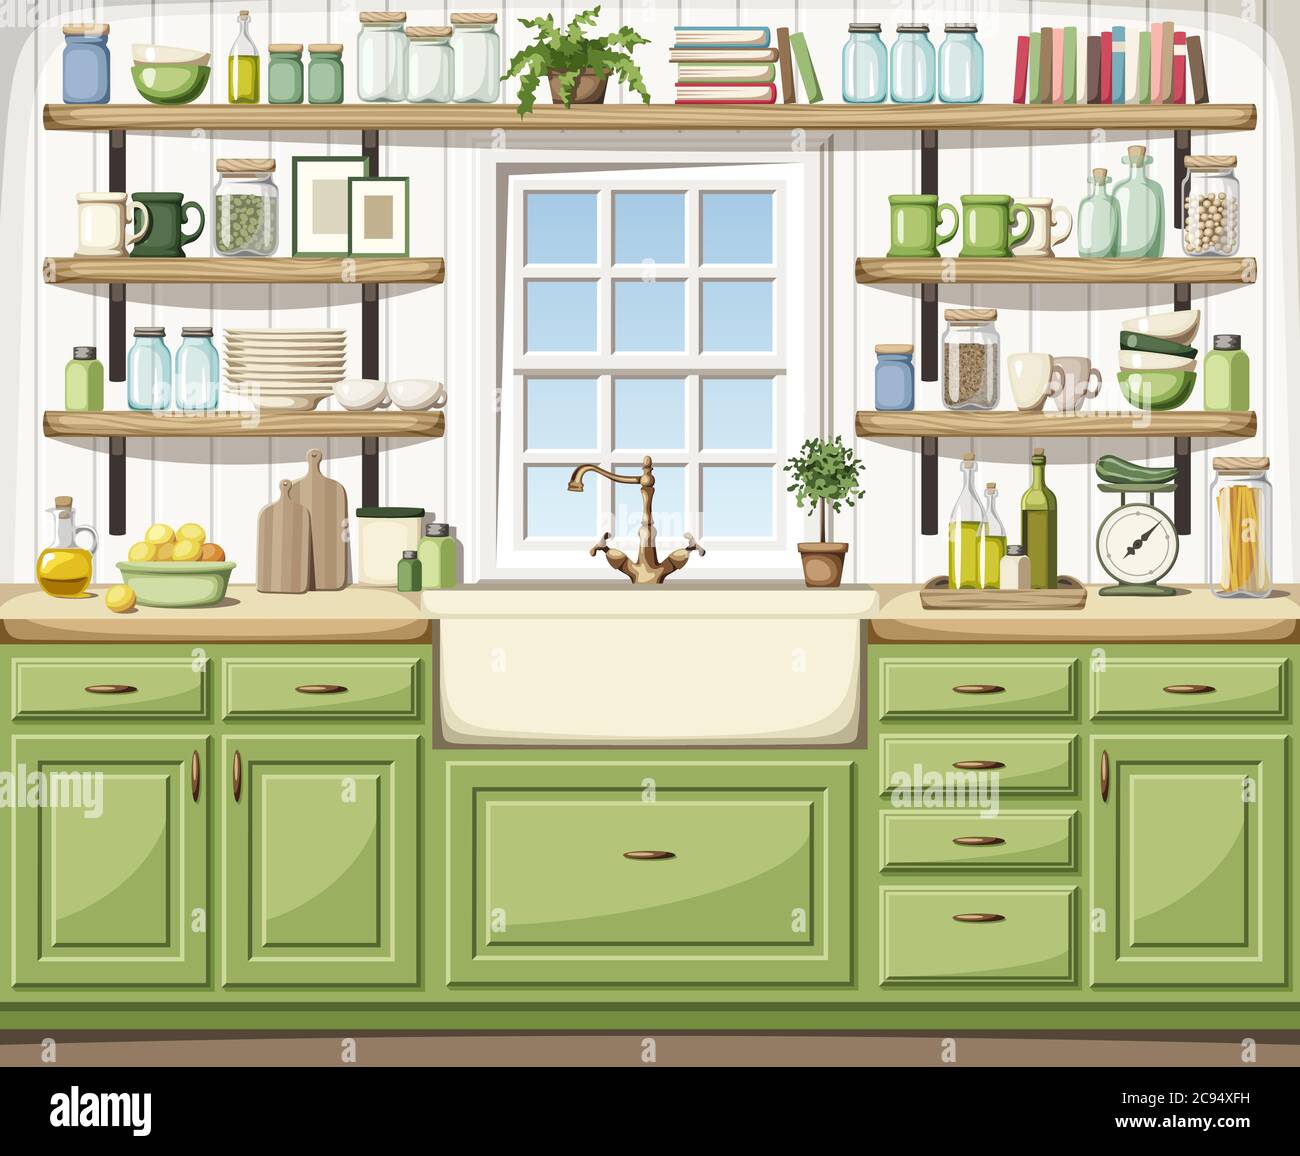 Illustrazione vettoriale di un interno di cucina con armadi verdi, un lavello, ripiani aperti, una finestra e utensili da cucina. Illustrazione Vettoriale